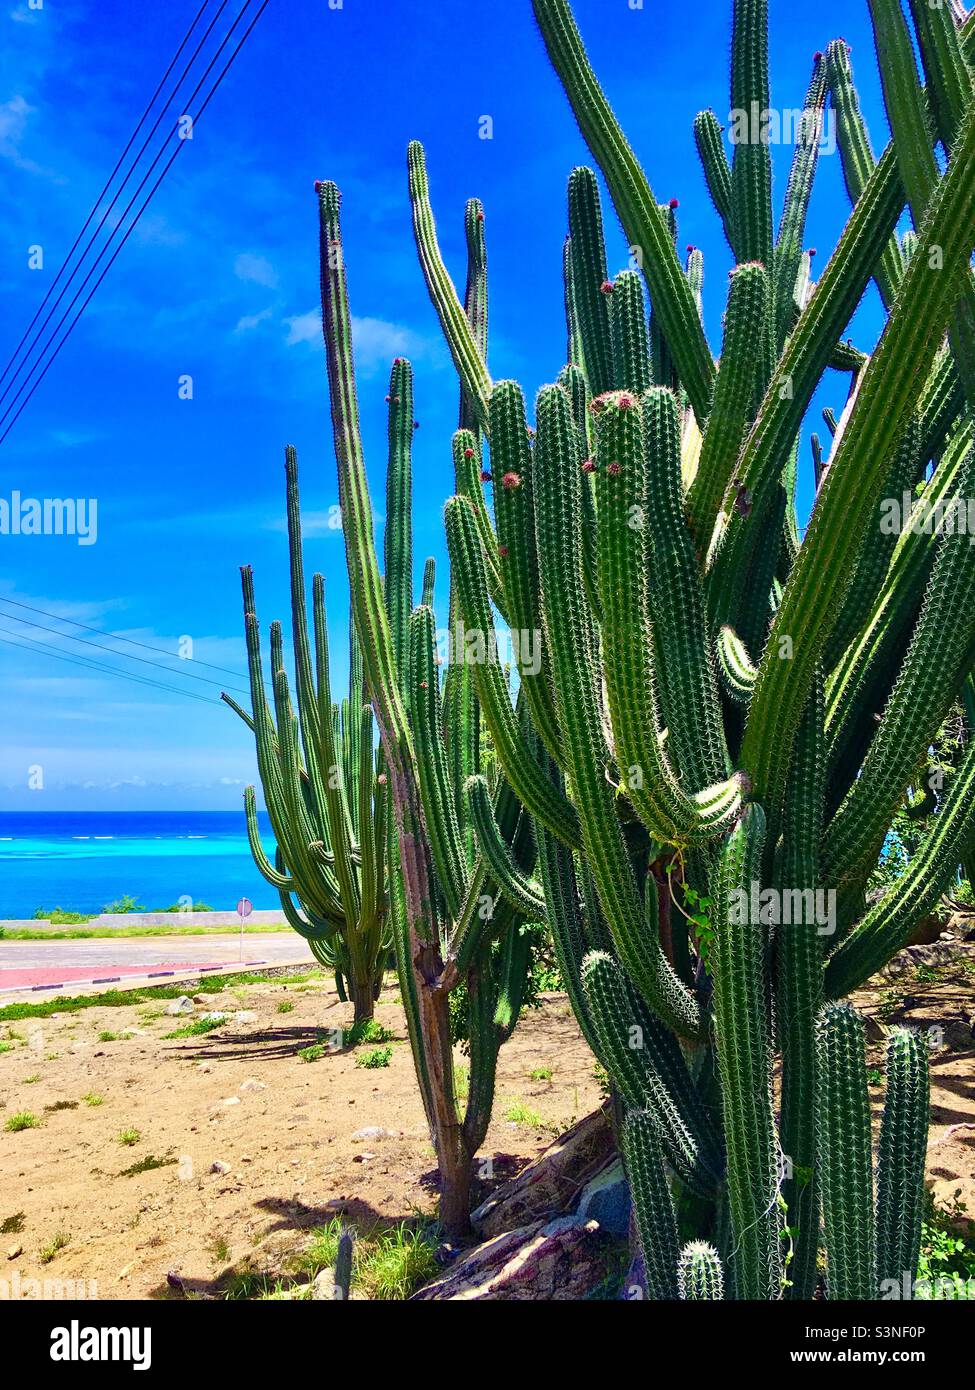 Mur de Cactus à Aruba Banque D'Images